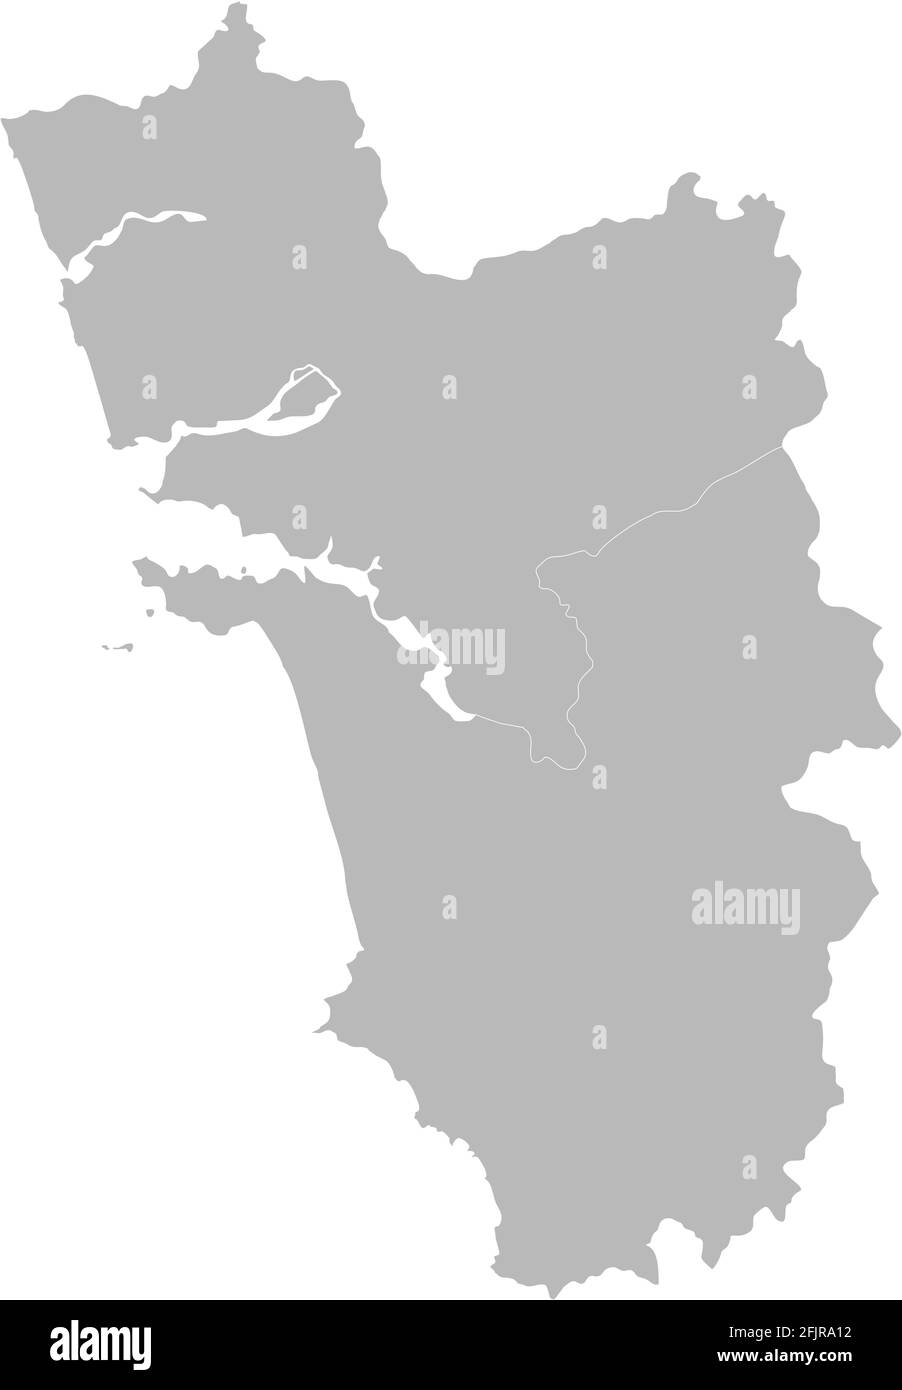 Mappa dei distretti di Goa. Stato indiano. Sfondo grigio. Concetti e background aziendali. Illustrazione Vettoriale